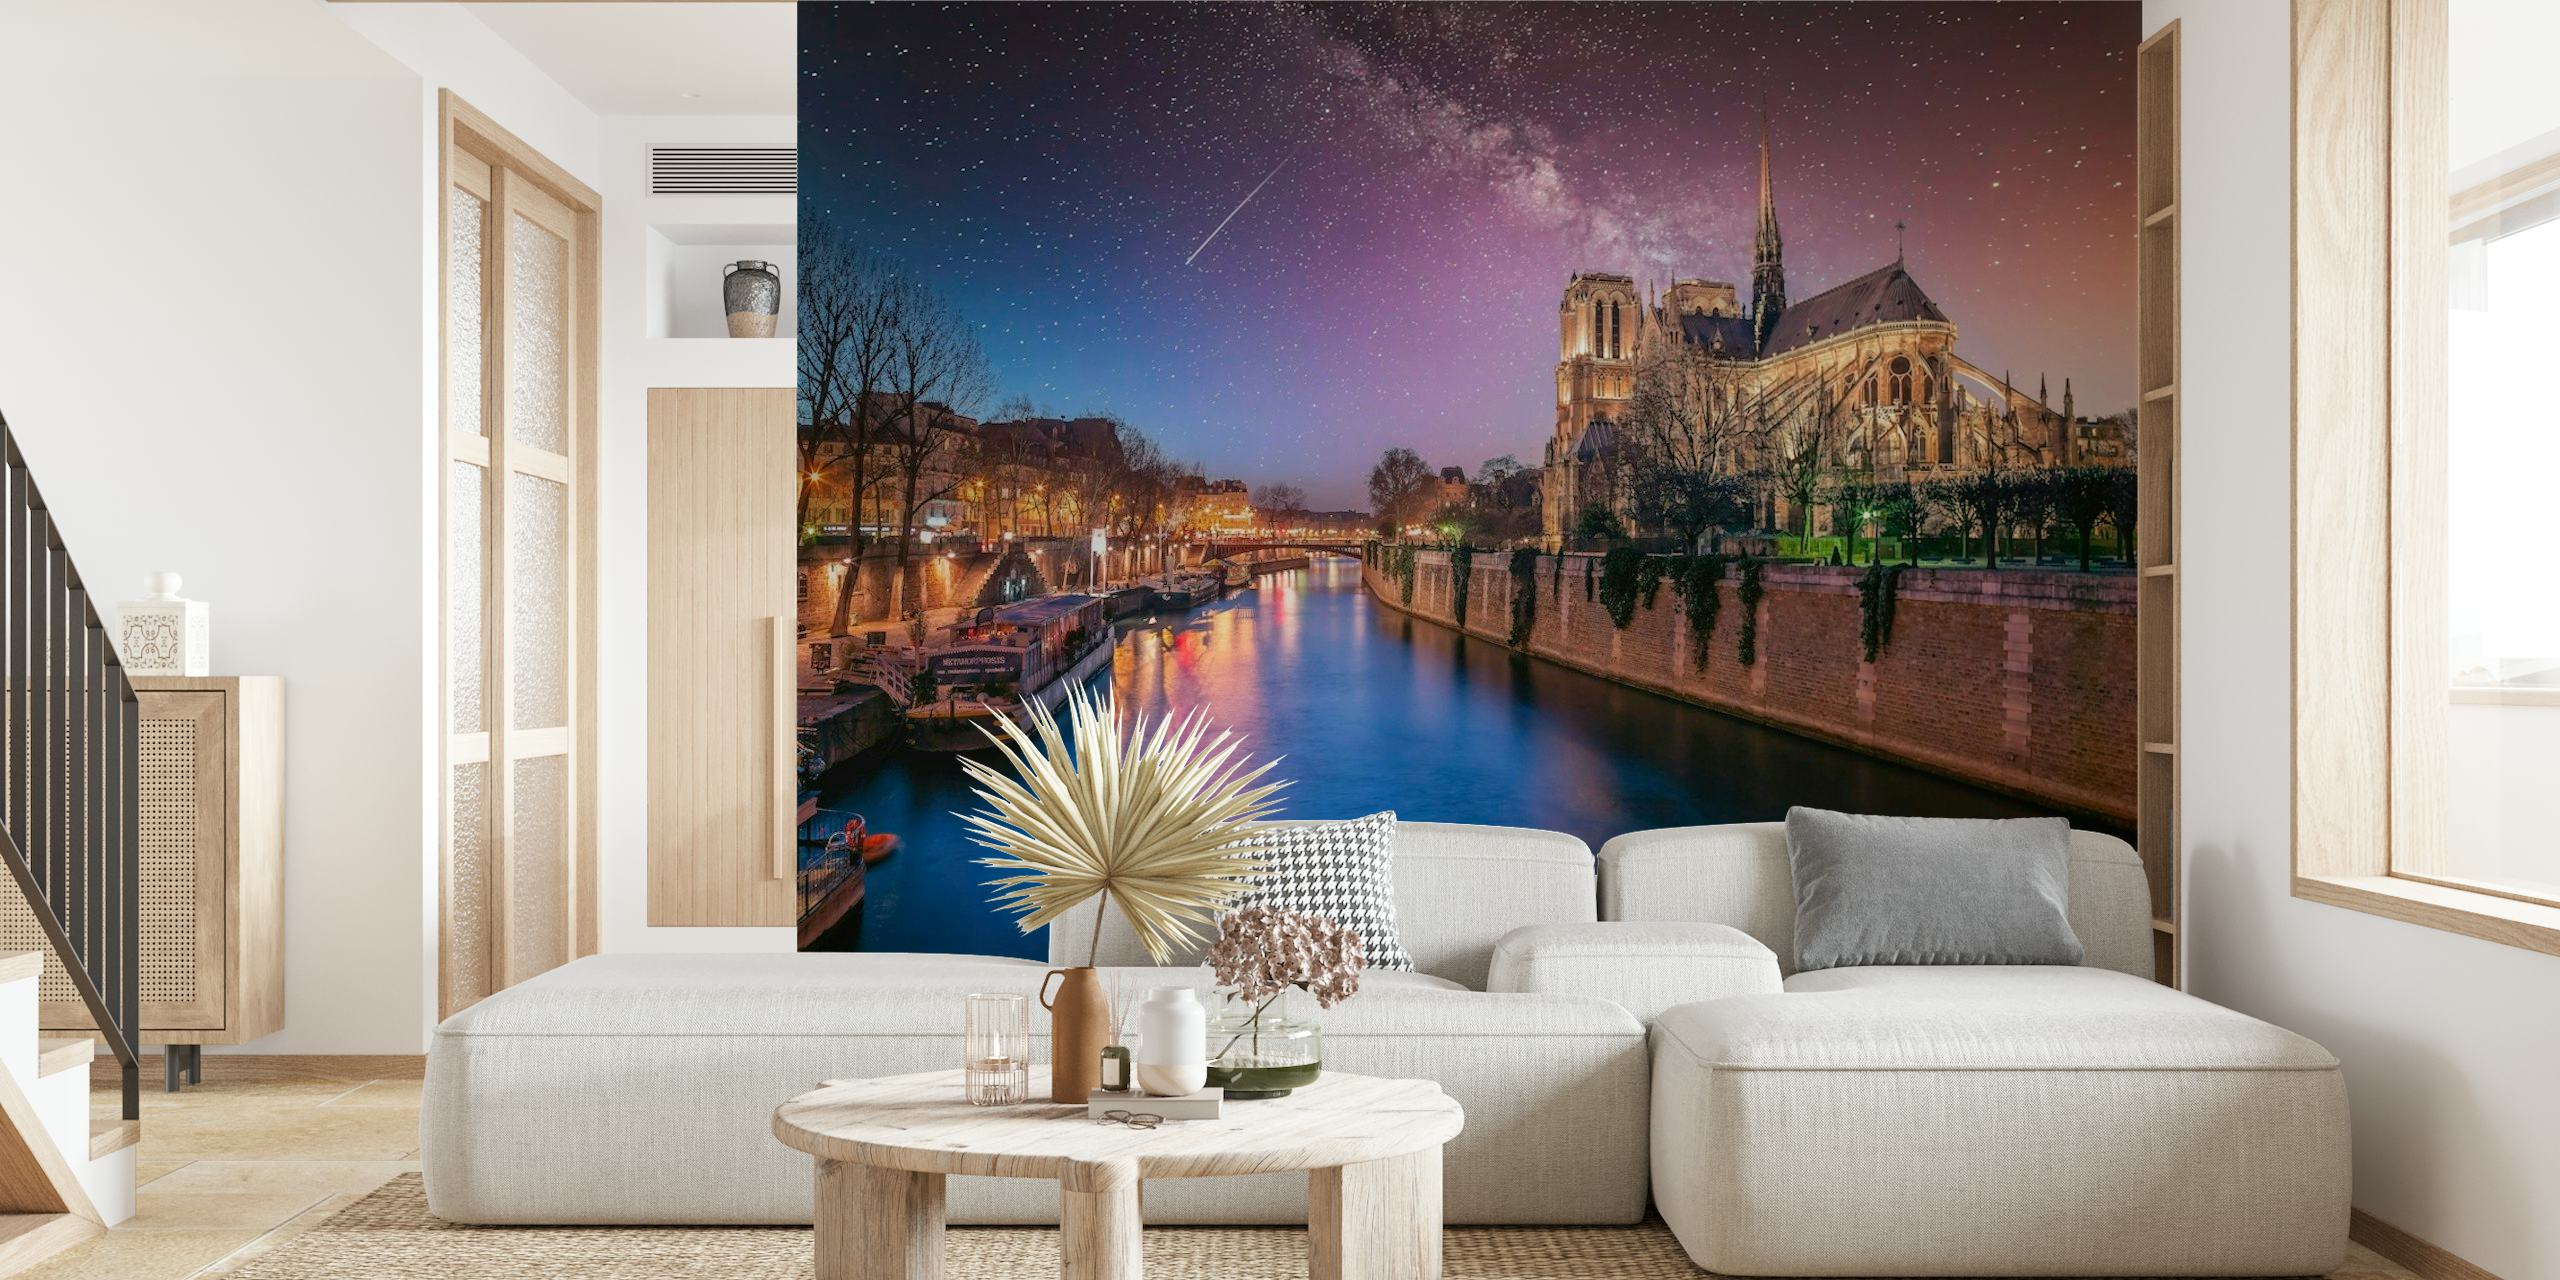 Notre-Dame-kathedraal tegen een sterrenhemel met de rivier de Seine op de voorgrond.